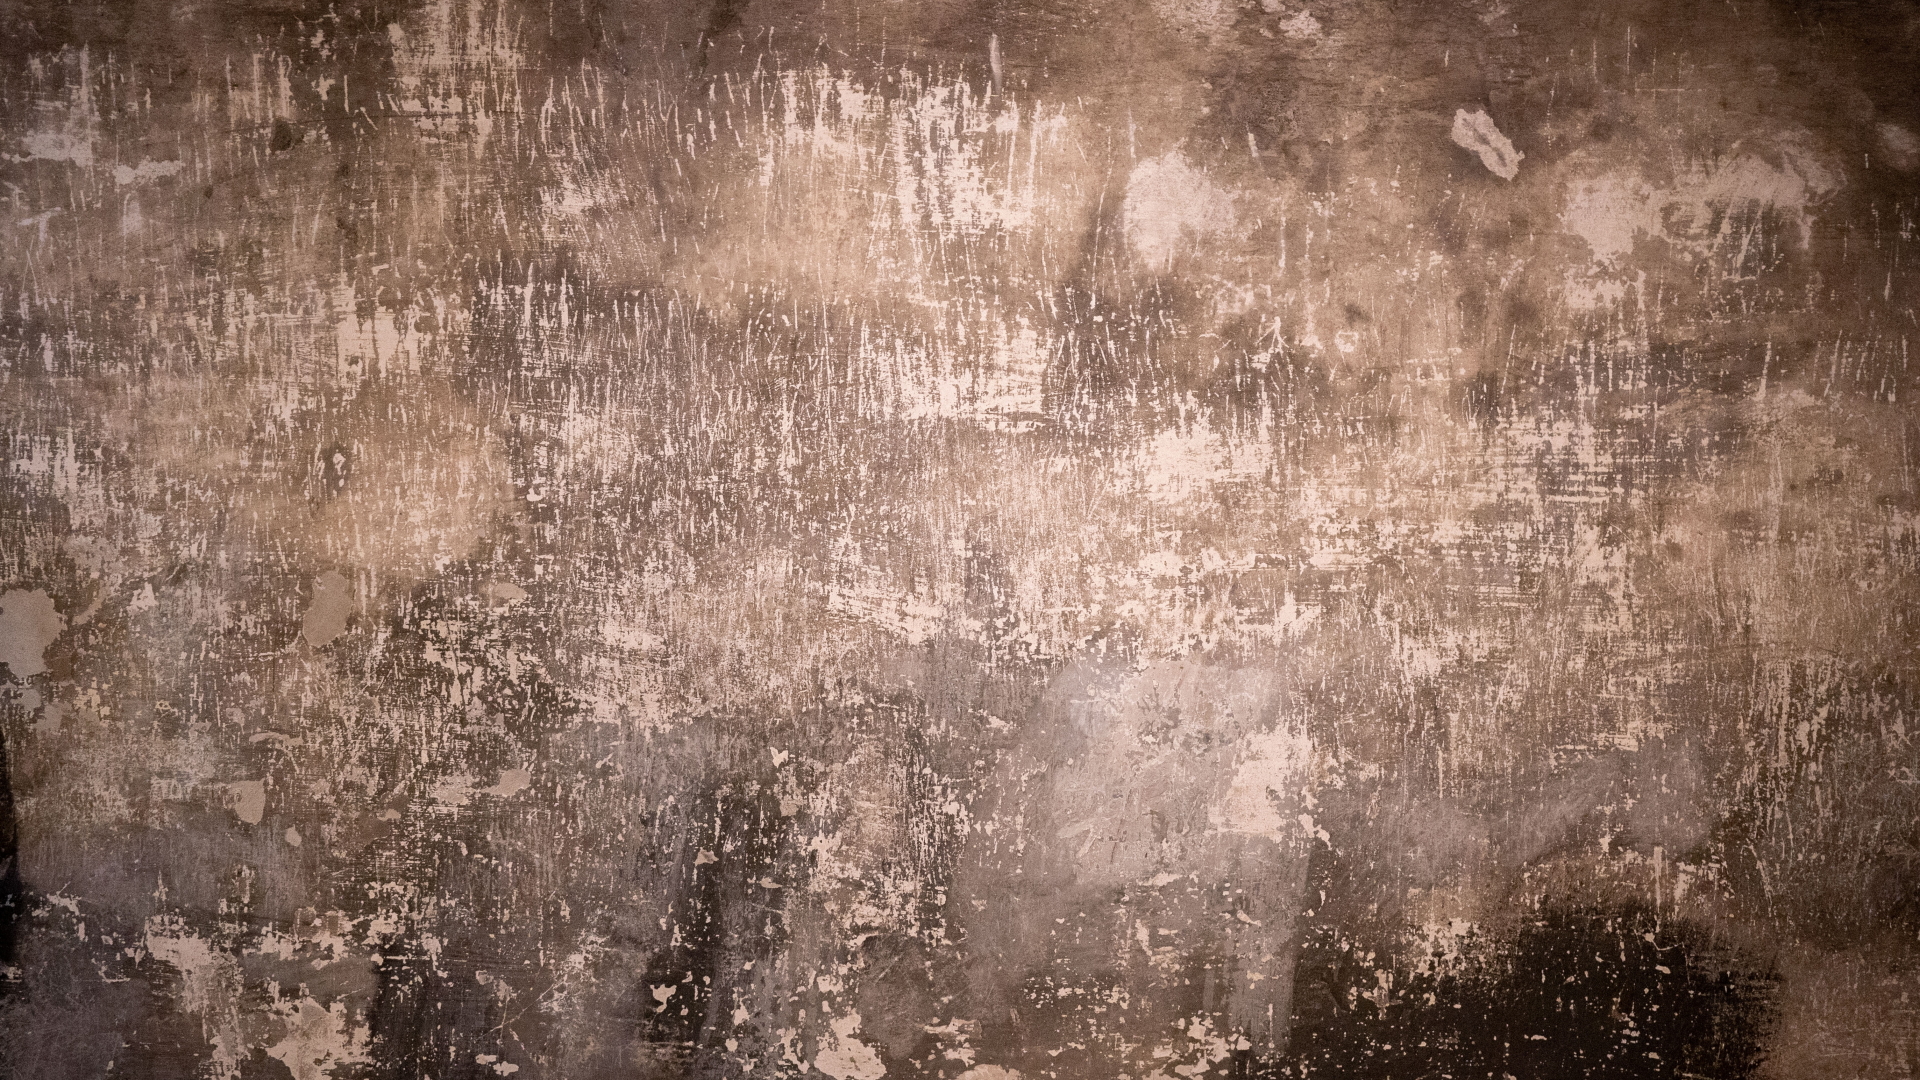 25.01.2020, Polen, Oswiecim: Kratzspuren an den Wänden erinnern an die Qualen der Häftlinge in der rekonstruierten Gaskammer im früheren Konzentrationslager Auschwitz I. | dpa